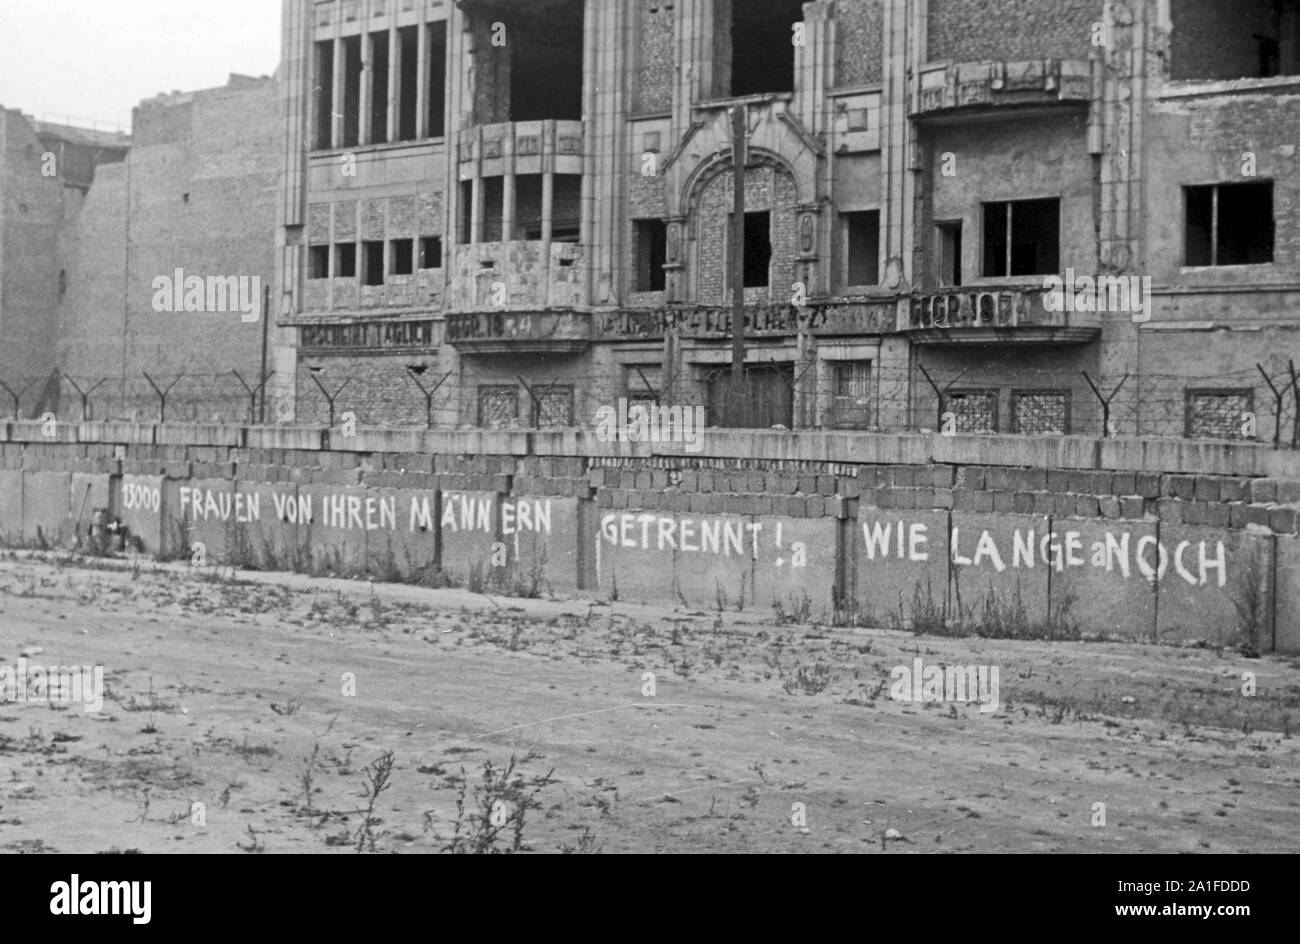 Berliner Mauer mit dem Slogan '13000 Frauen von ihren Männern getrennt! Wie lange noch?', Deutschland 1962. Berlin wall with the slogan '13000 women separated from their men! How long?', Germany 1962. Stock Photo